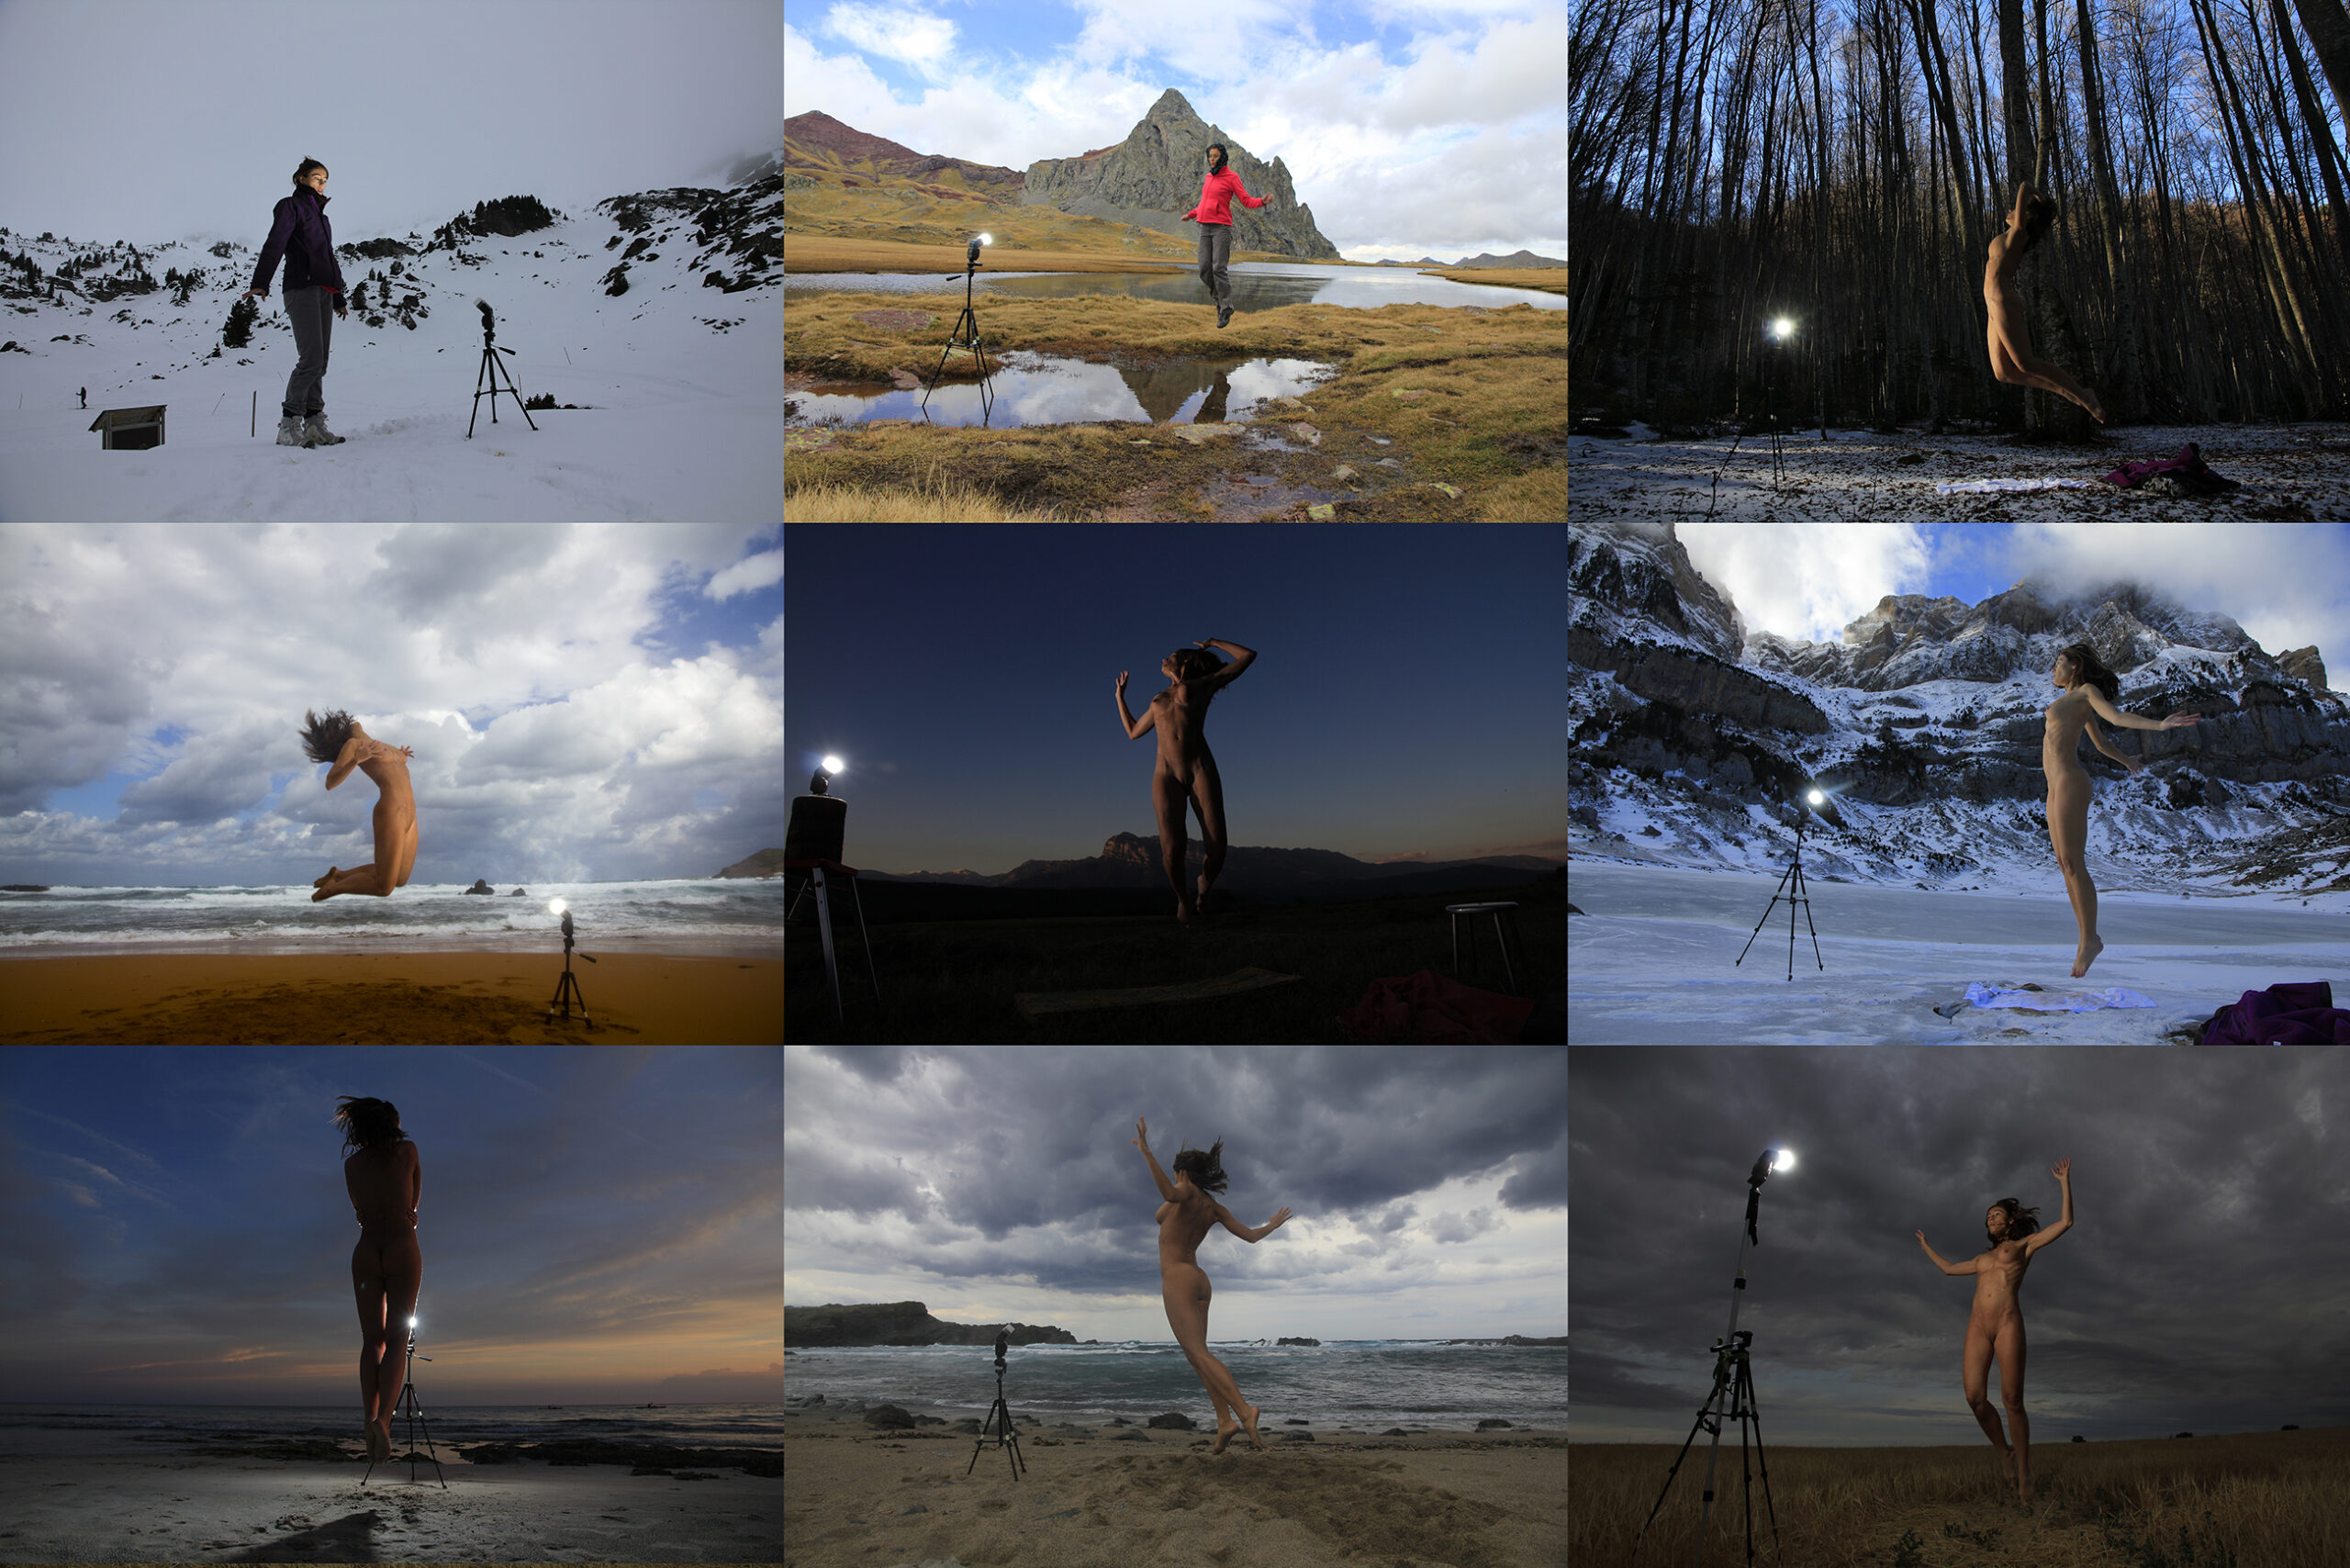 Fotos de Making of del proyecto “Sinapsis”, 2013, 2014, 2015